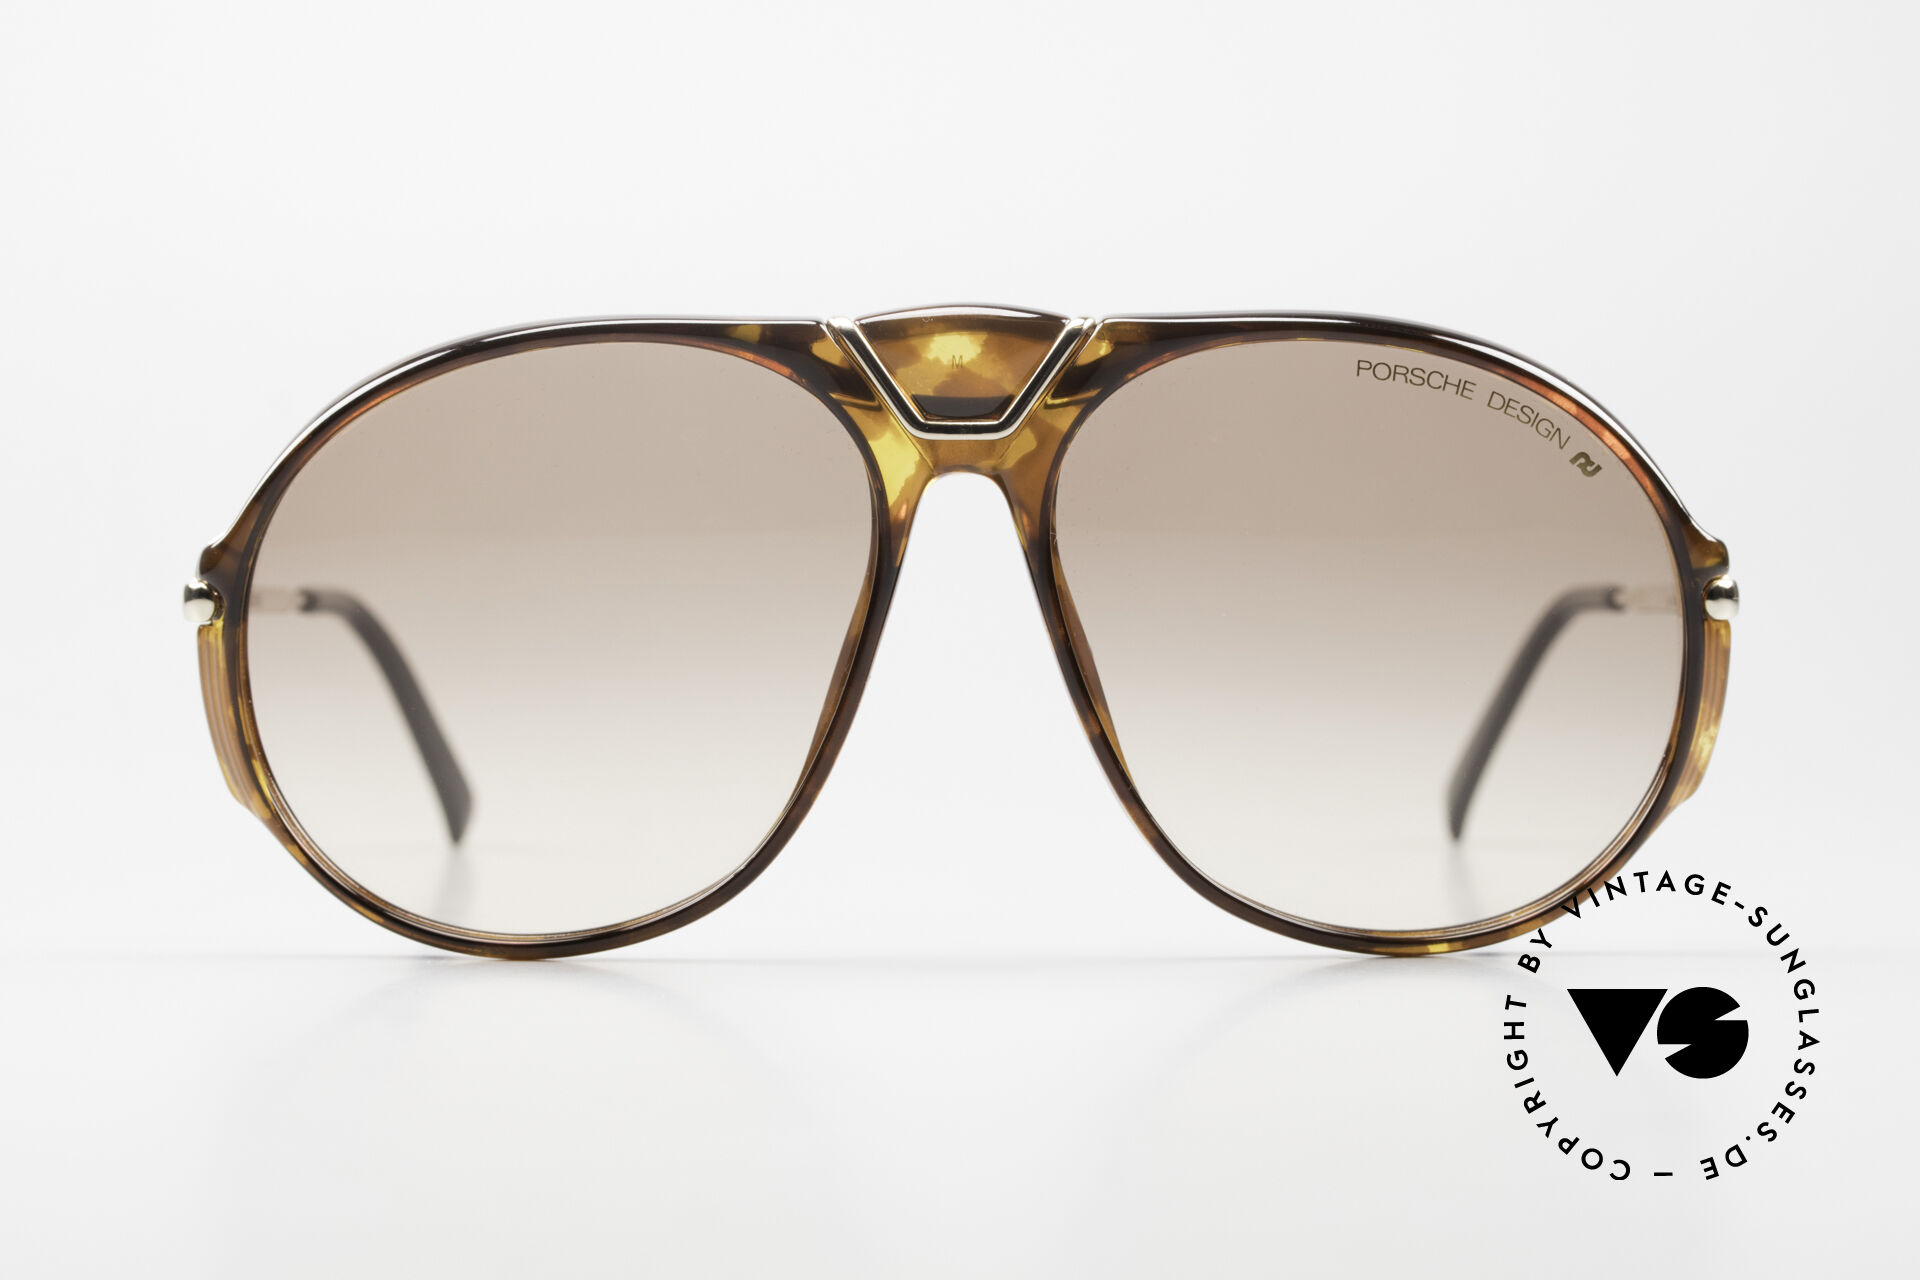 Sunglasses Porsche 5659 2 Interchangeable Lenses